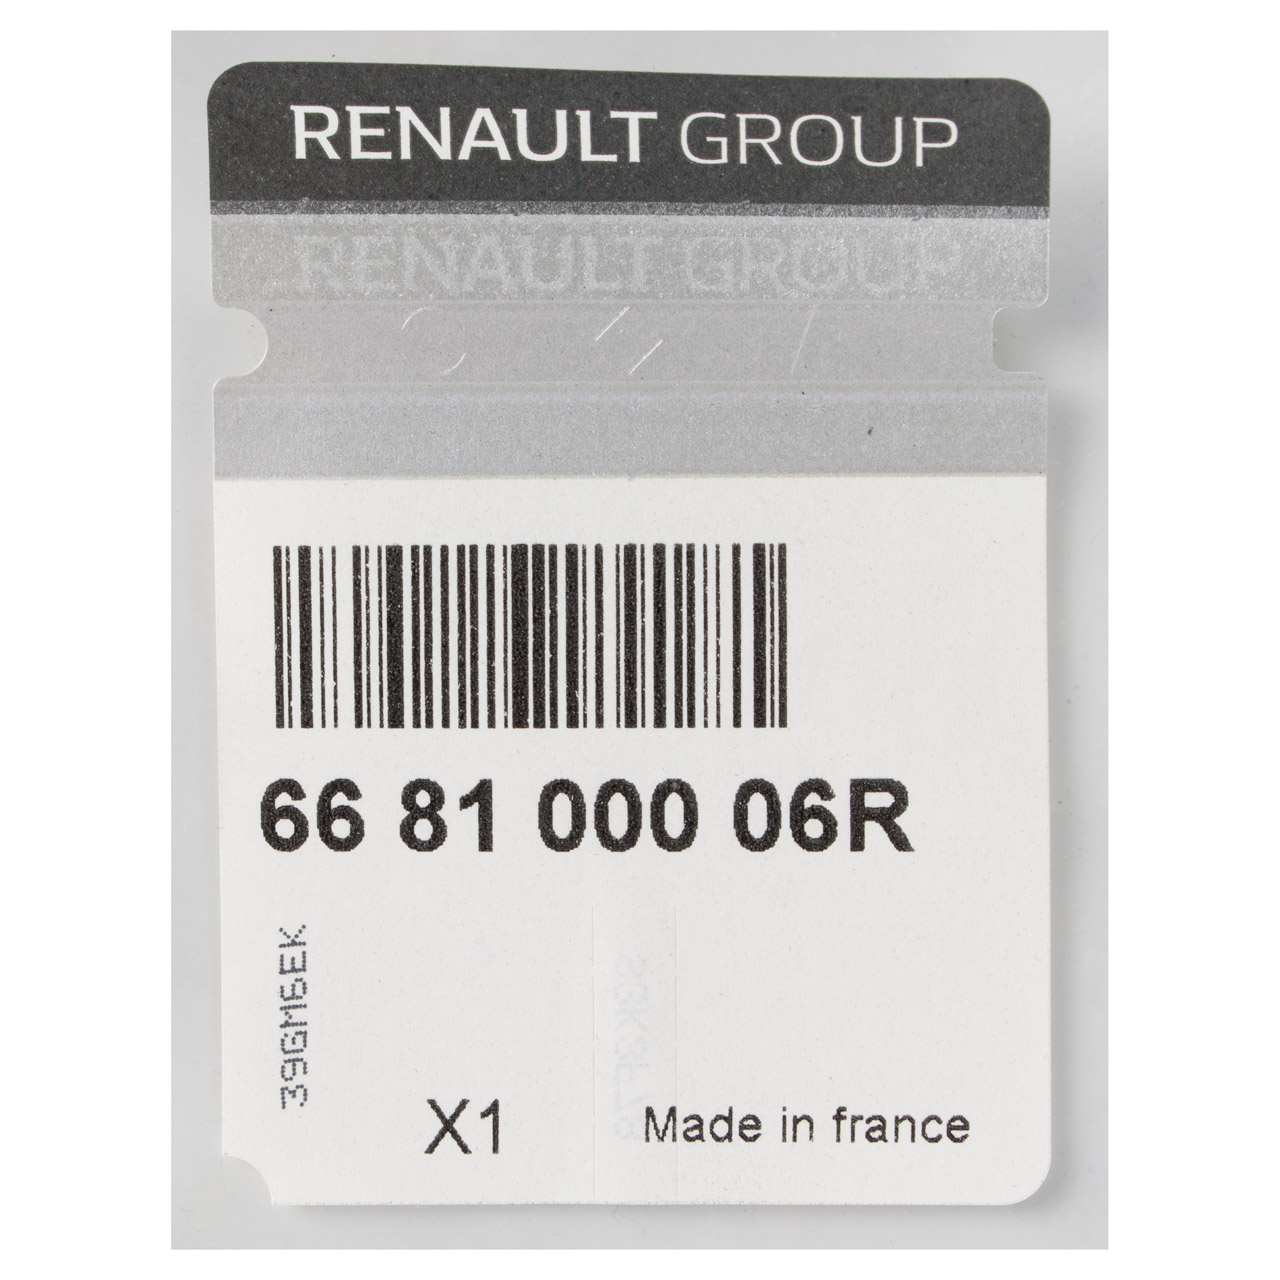 ORIGINAL Renault Abdeckung Wasserkasten Windschutzscheibe Grand / Scenic 3 668100006R